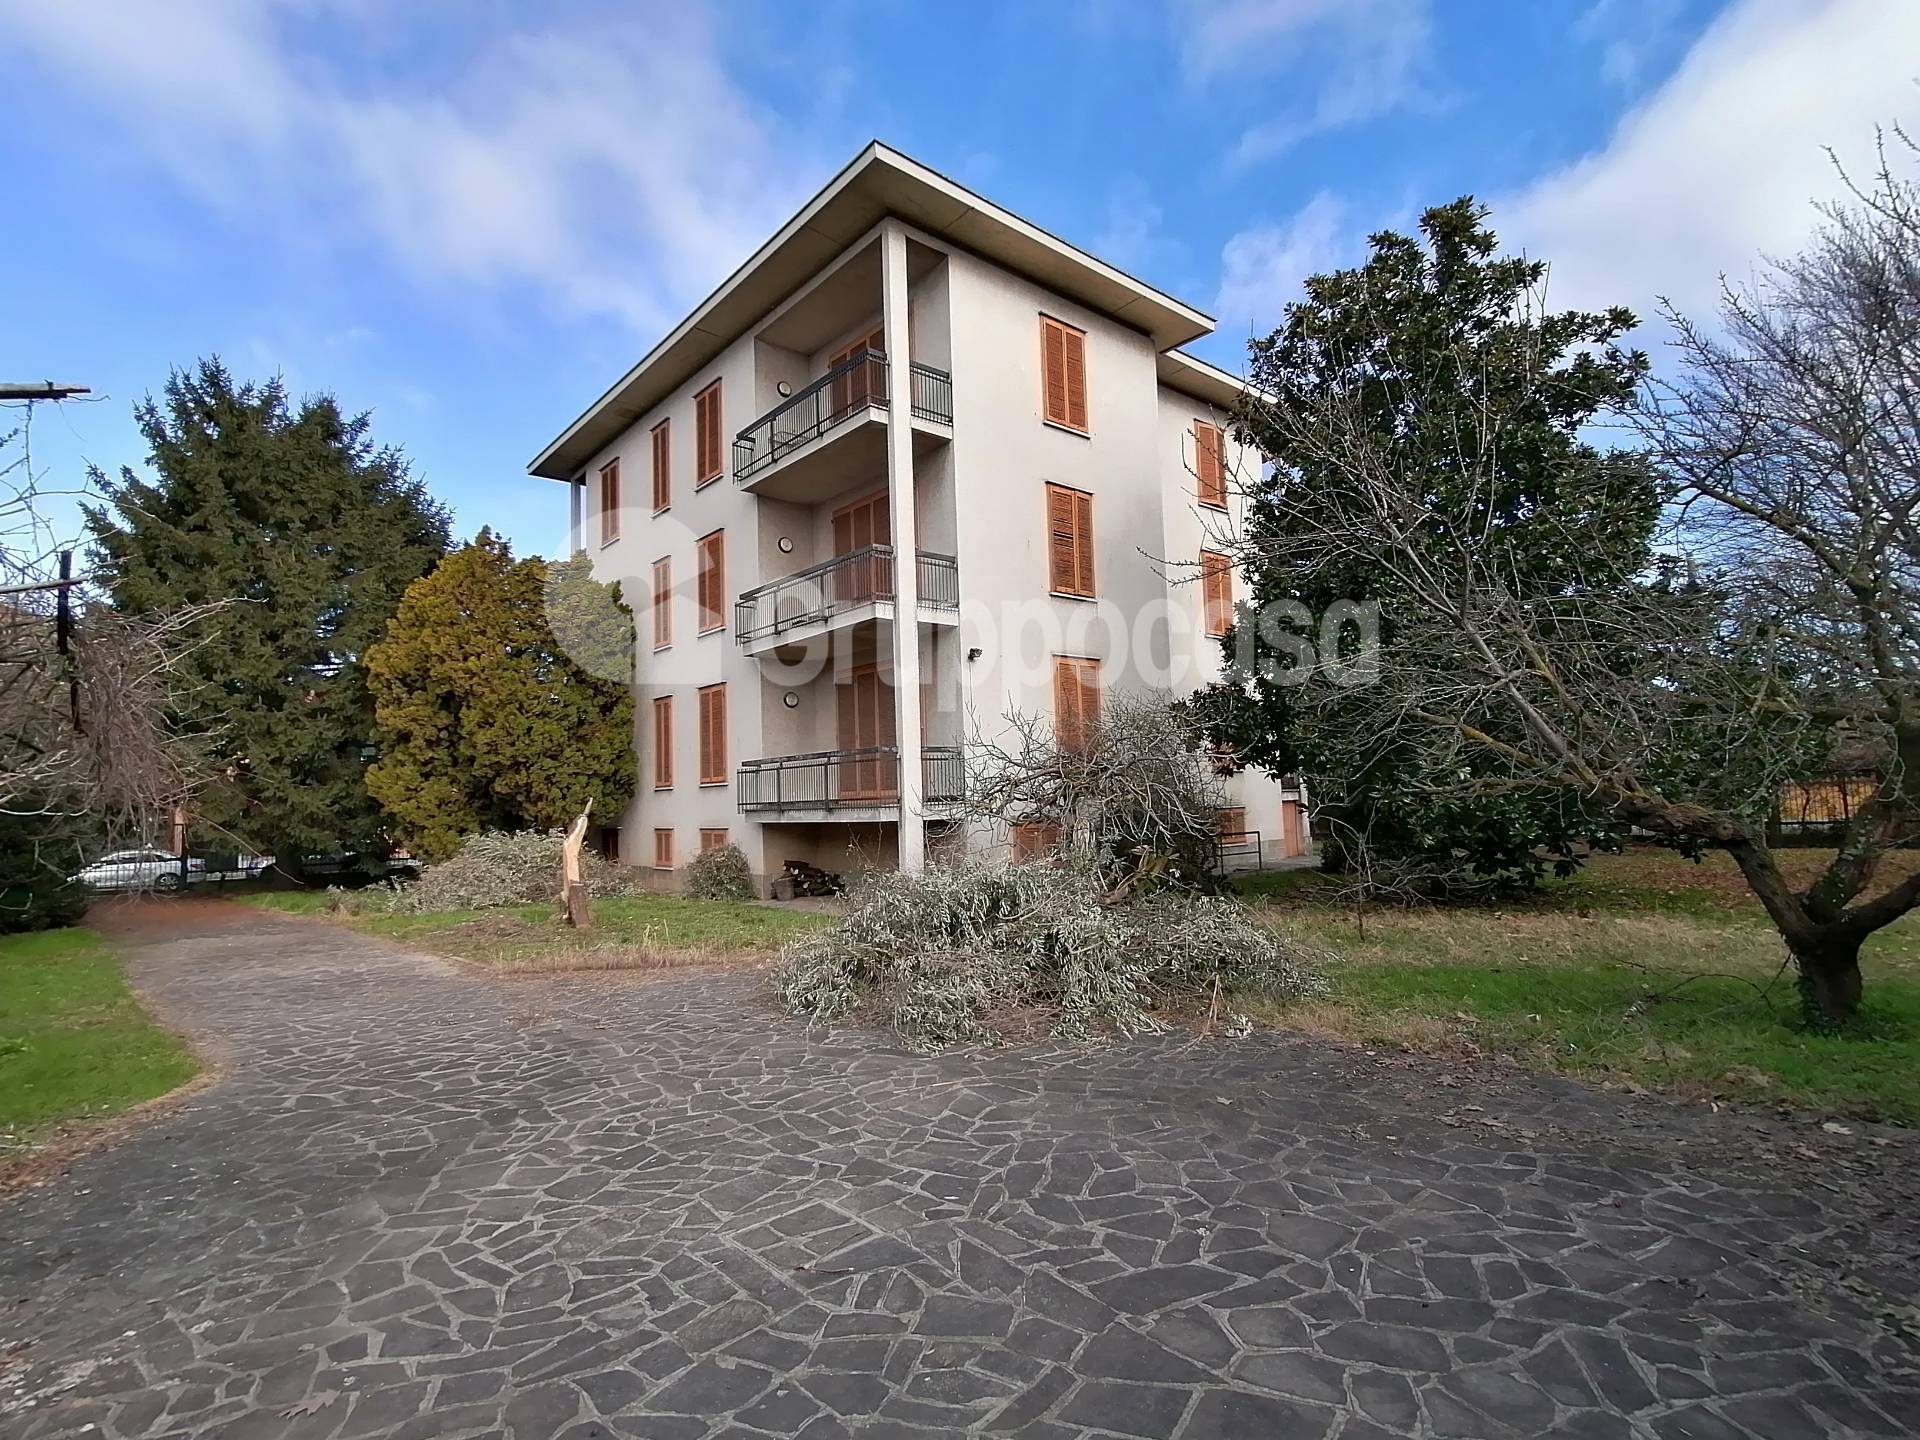 Villa in vendita a Marcallo con Casone, 12 locali, prezzo € 630.000 | PortaleAgenzieImmobiliari.it